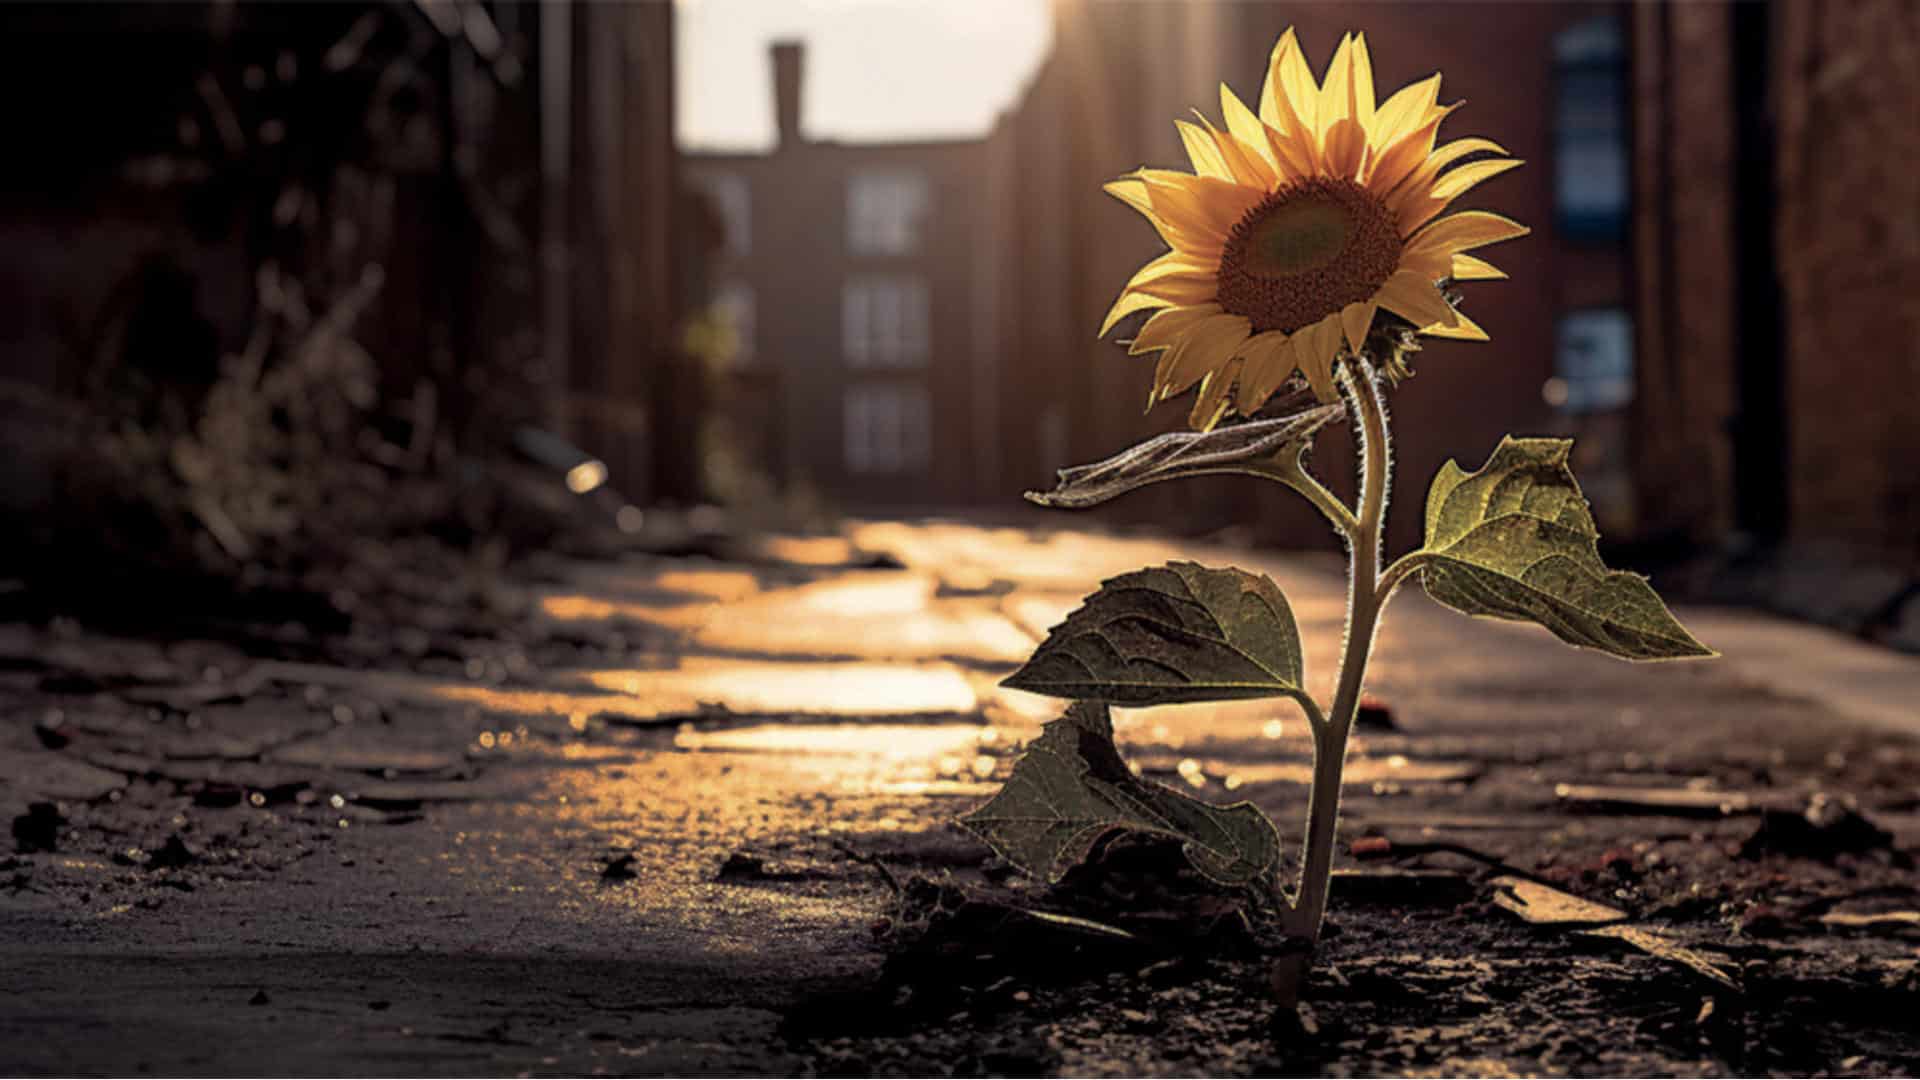 sunflower bloom in sunlight in an alley